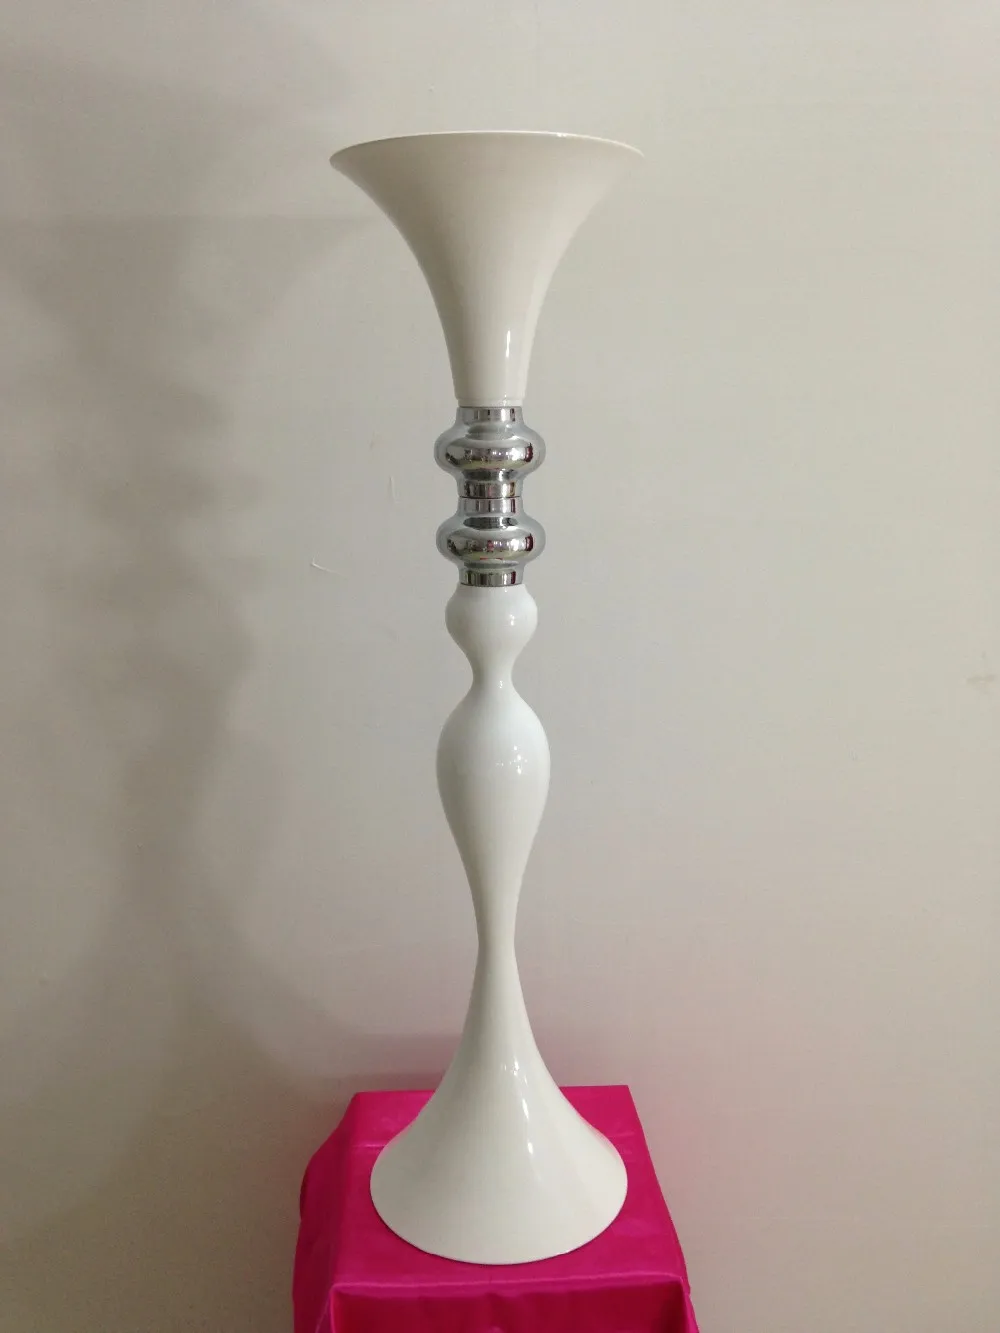 mais recente qualidade branco trompete forma vaso 11 para peças centrais do casamento / vaso de casamento